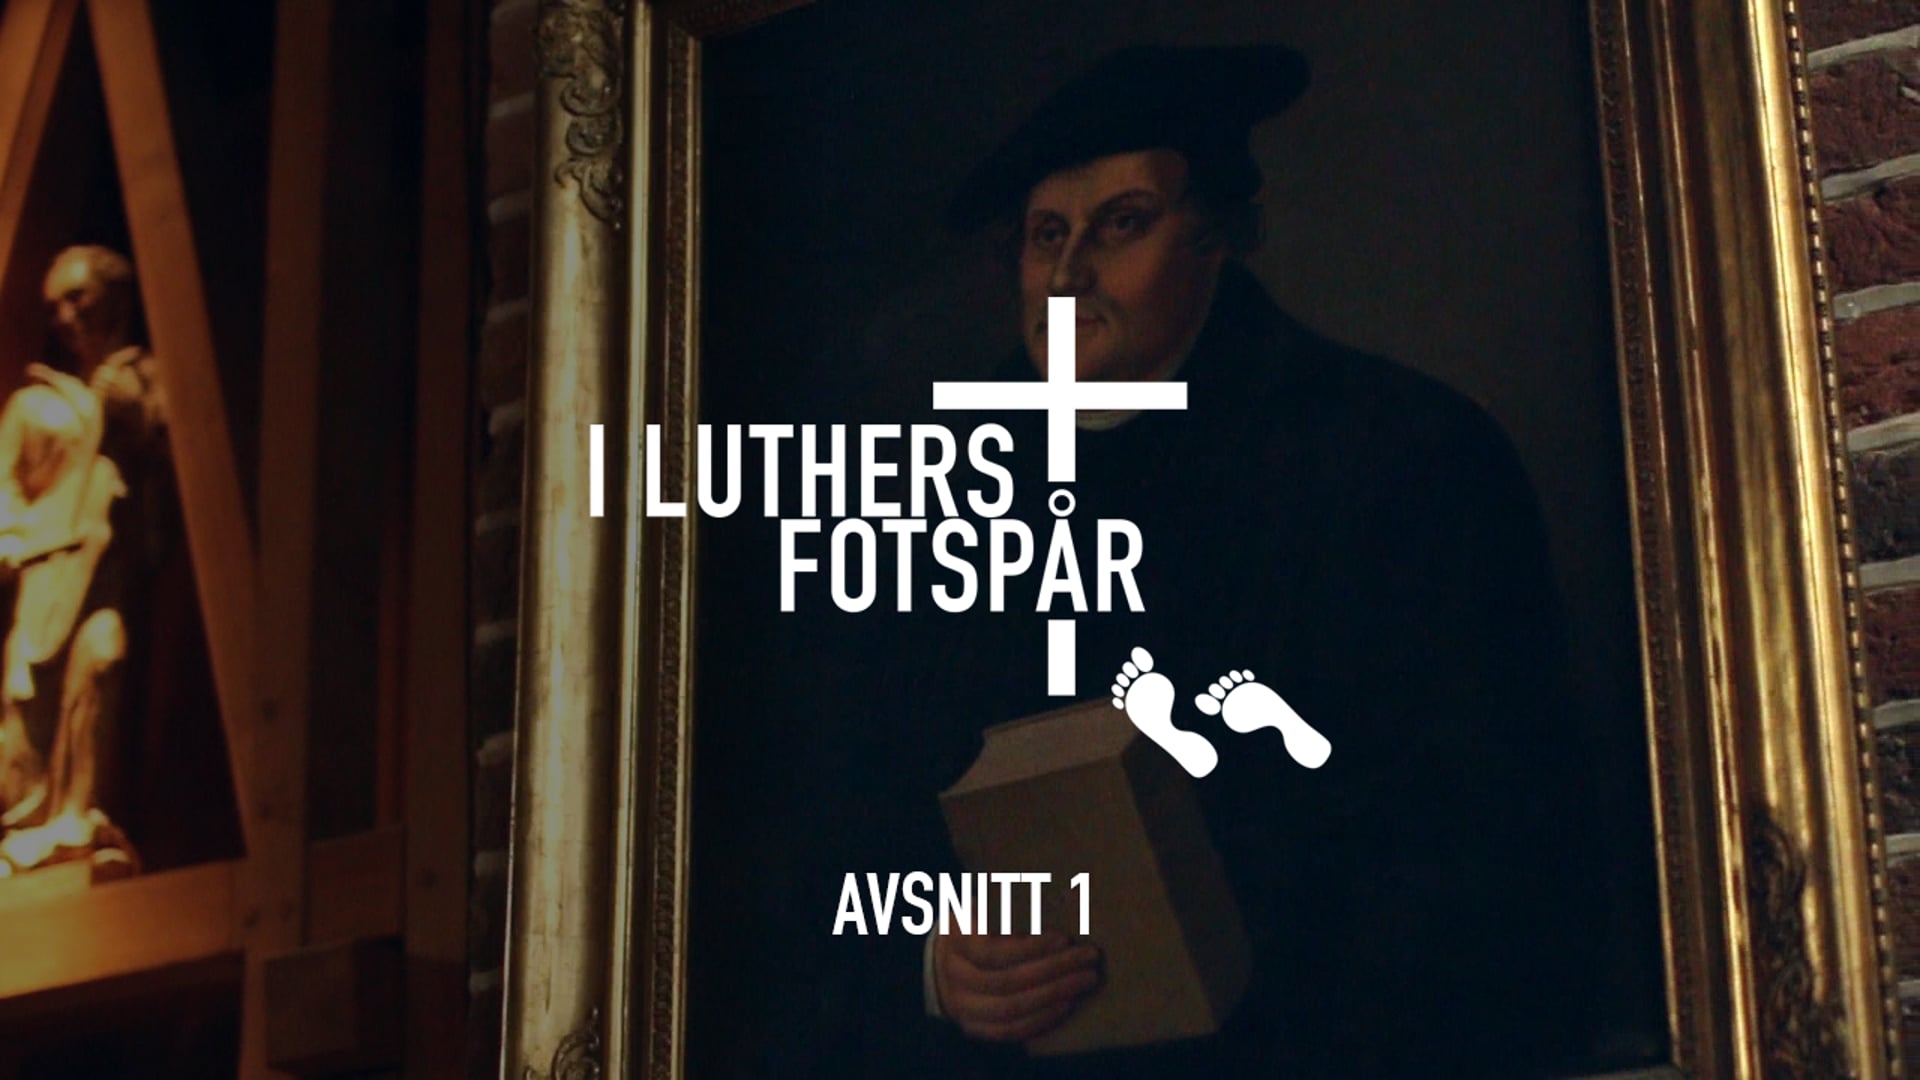 I Luthers fotspår – Avsnitt 1